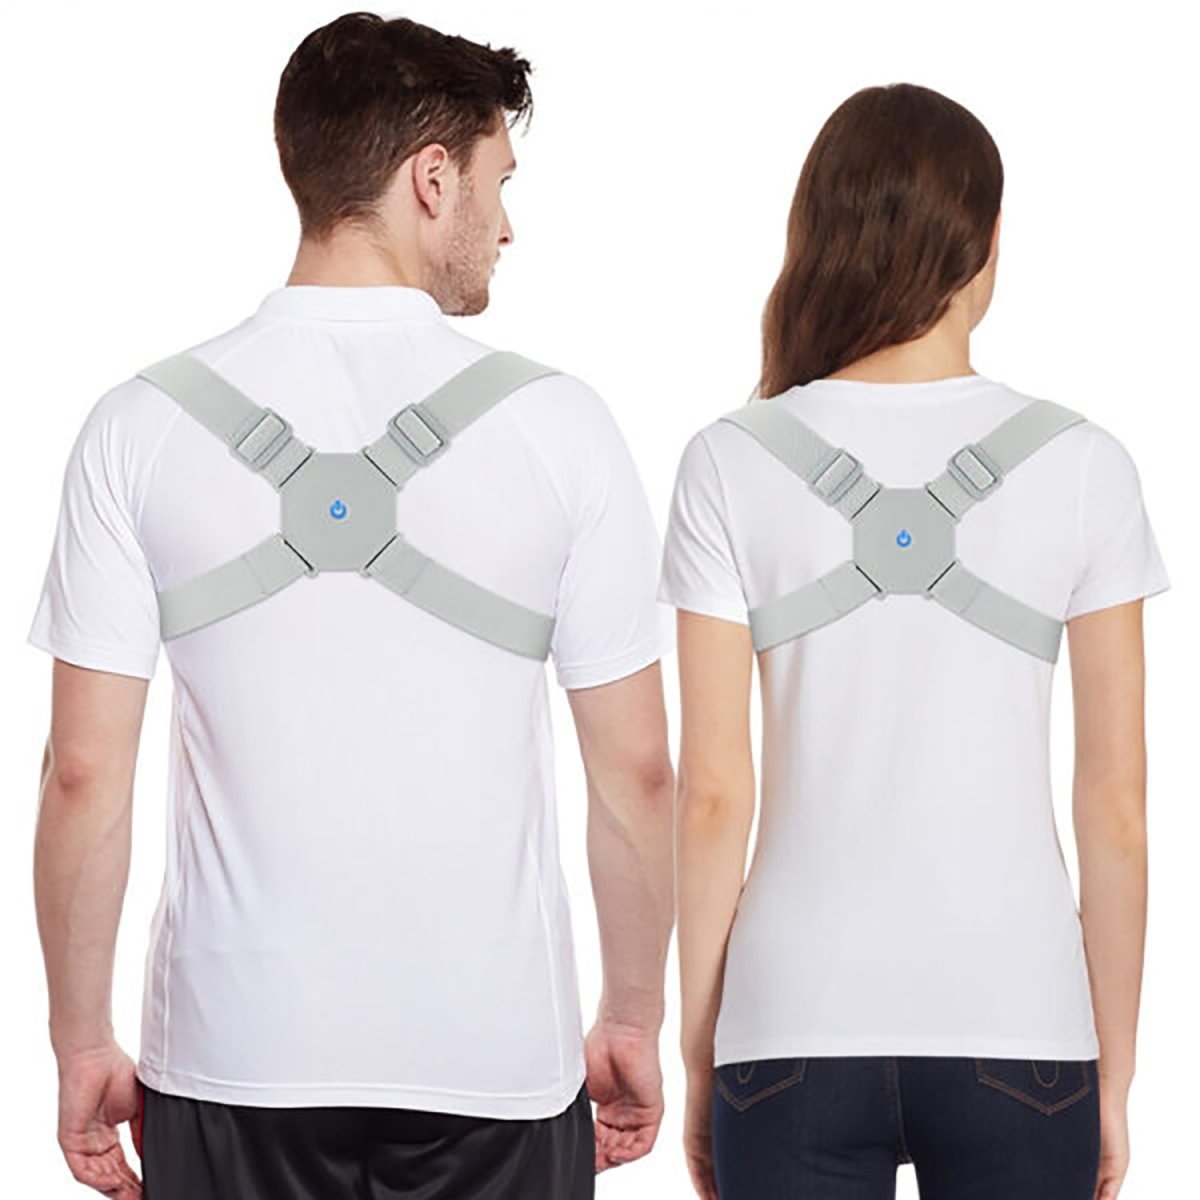 Corrector de espalda para hombre y mujer - Corrector de postura espalda - Corrector postural faja dolor de espalda